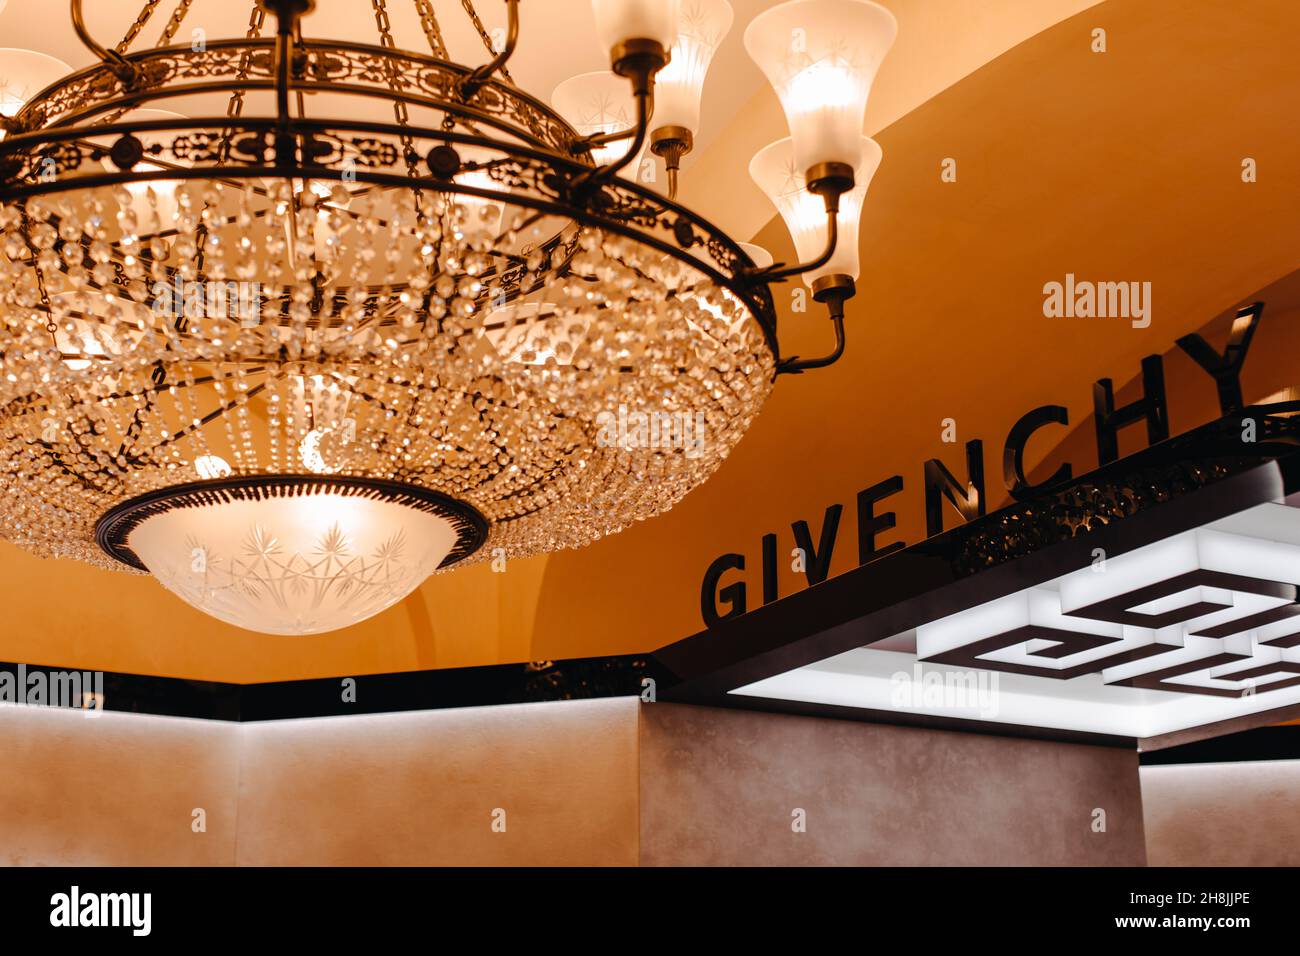 Tienda de lujo Givenchy. Casa francesa de moda y perfume, que alberga la marca de alta costura ropa, accesorios, cosméticos. Luz dorada del grito real Foto de stock